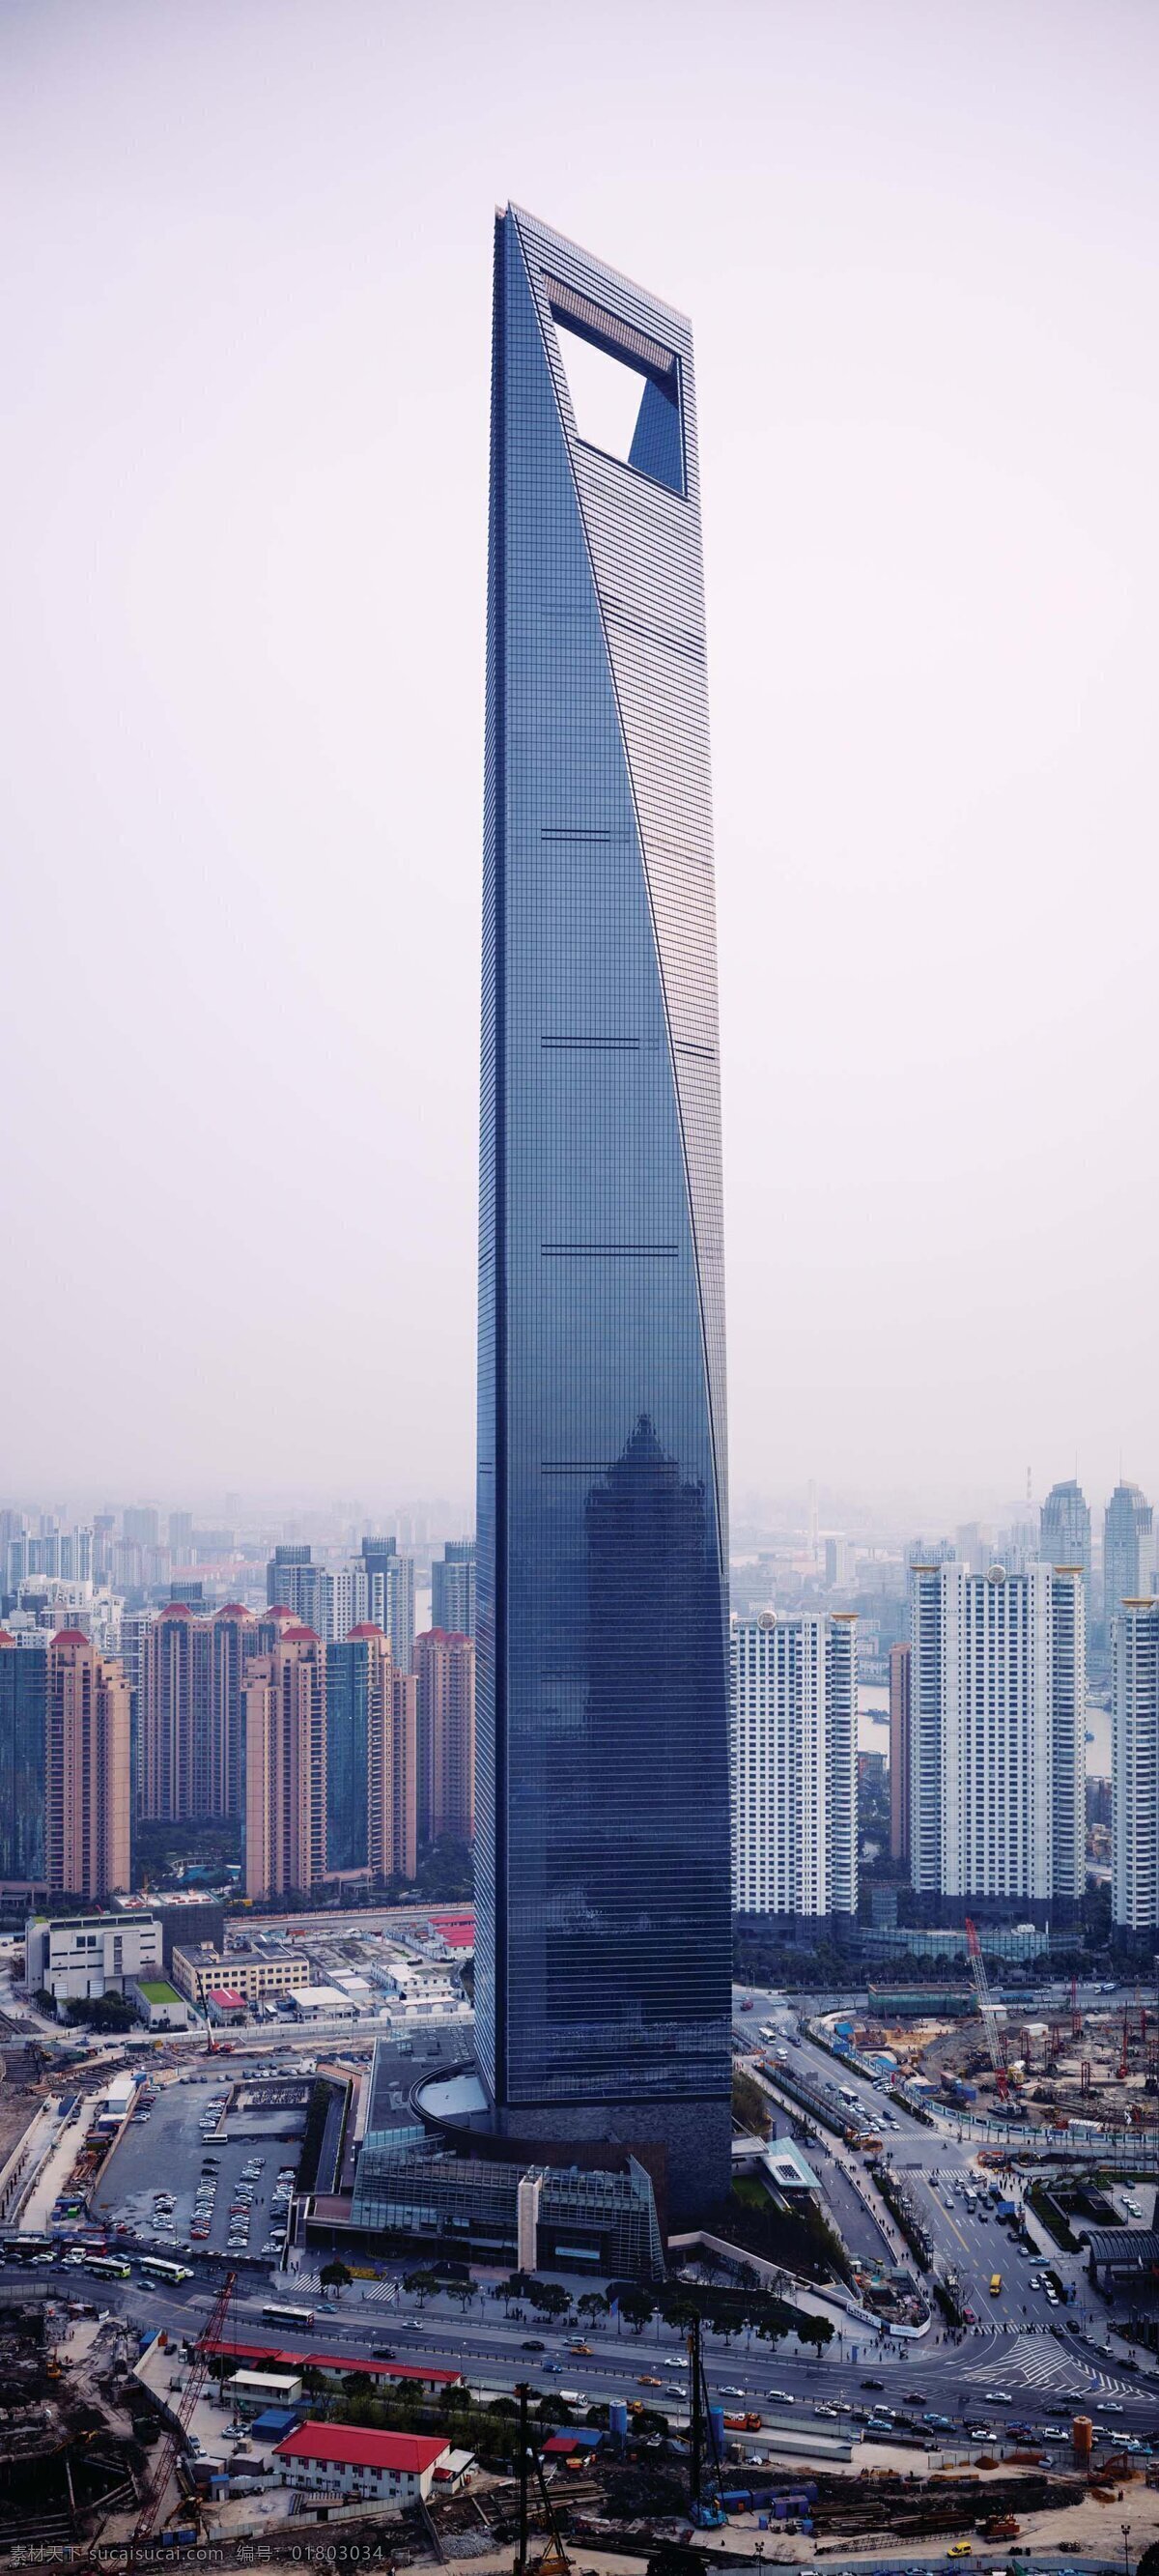 上海 环球 融 中心 浦东 陆家嘴 金融中心 高楼 现代都市 繁华城市 摩天大楼 高层建筑 沪 中国著名建筑 建筑摄影 建筑园林